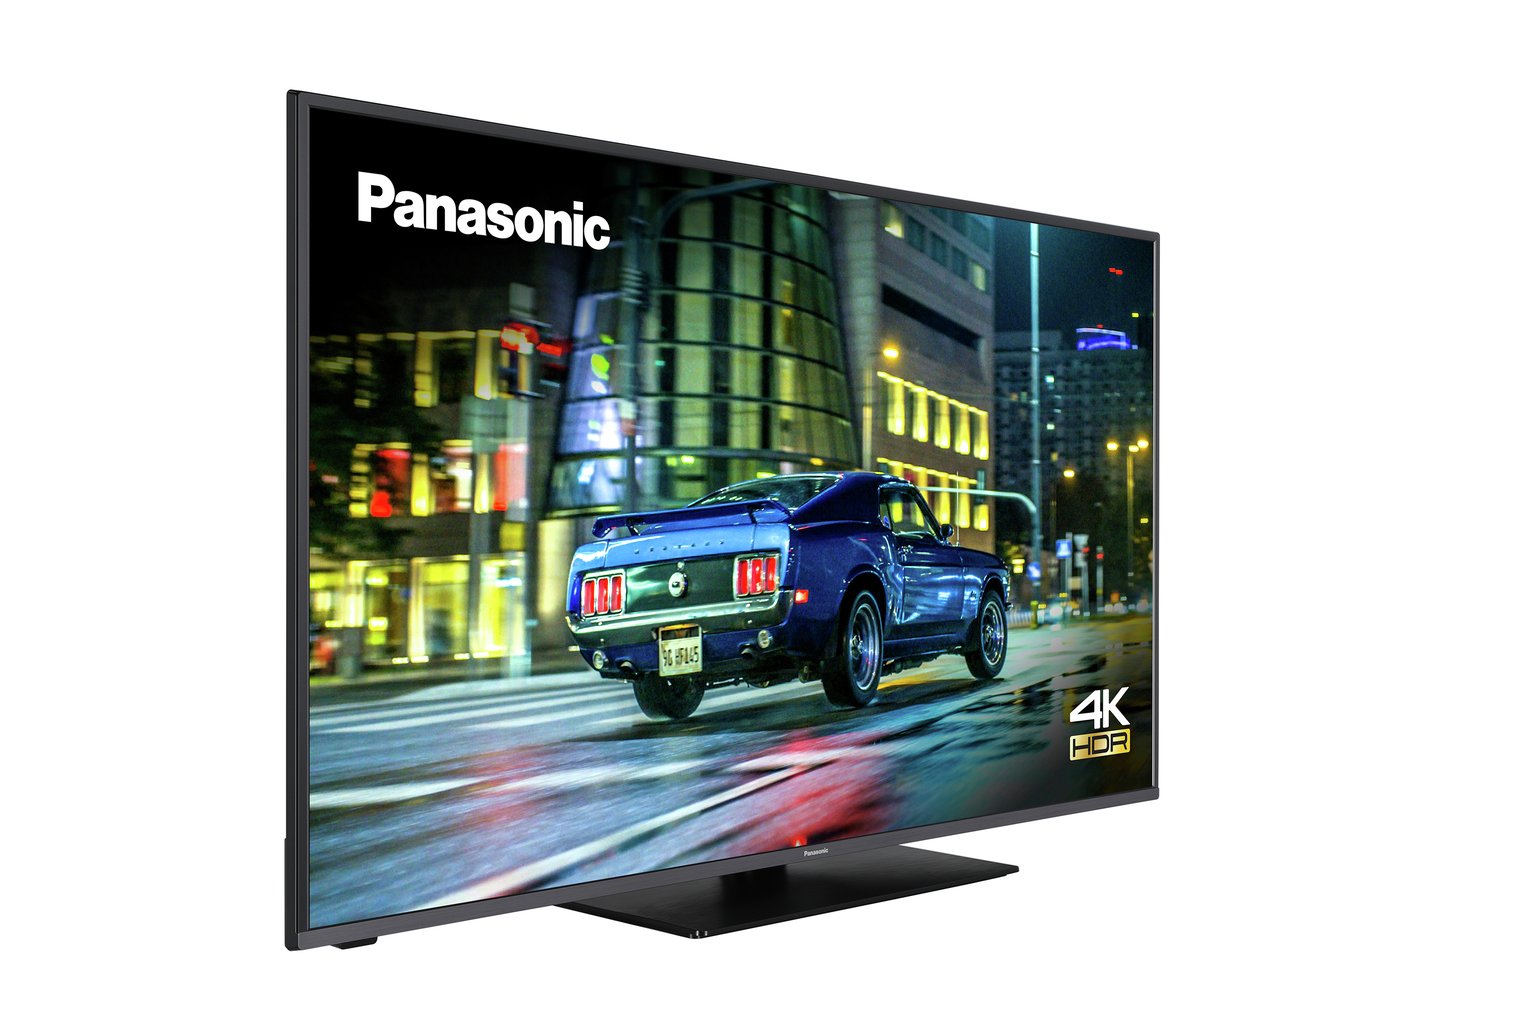 Panasonic 65 Inch TX-65HX580B Smart 4K Ultra HD LED TV Review